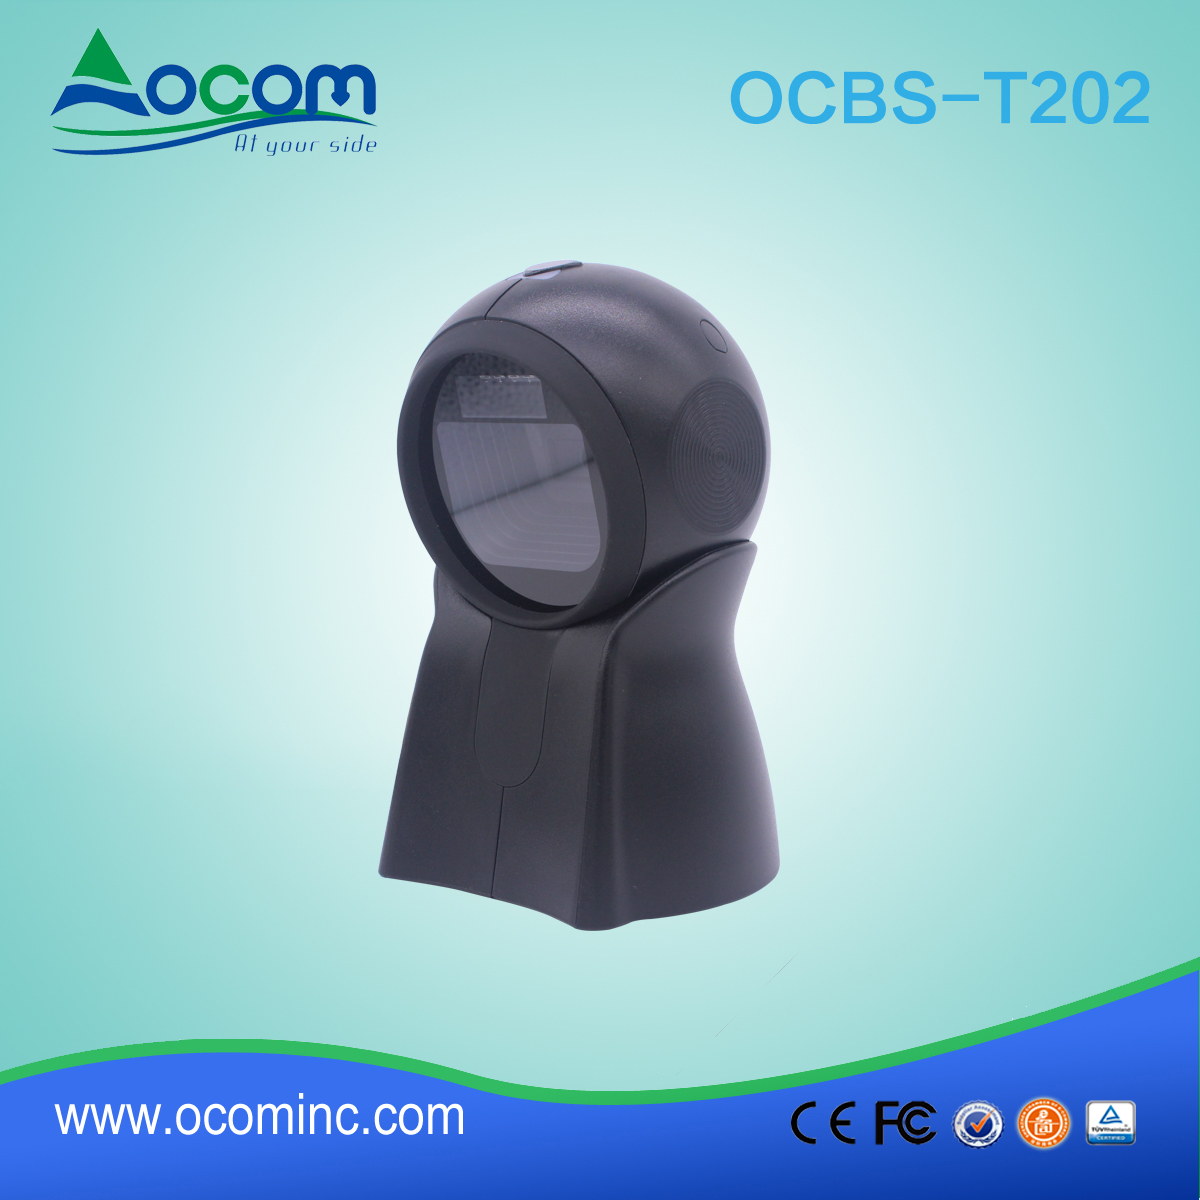 新产品OCBS-T202 Image 2D全向条码扫描器